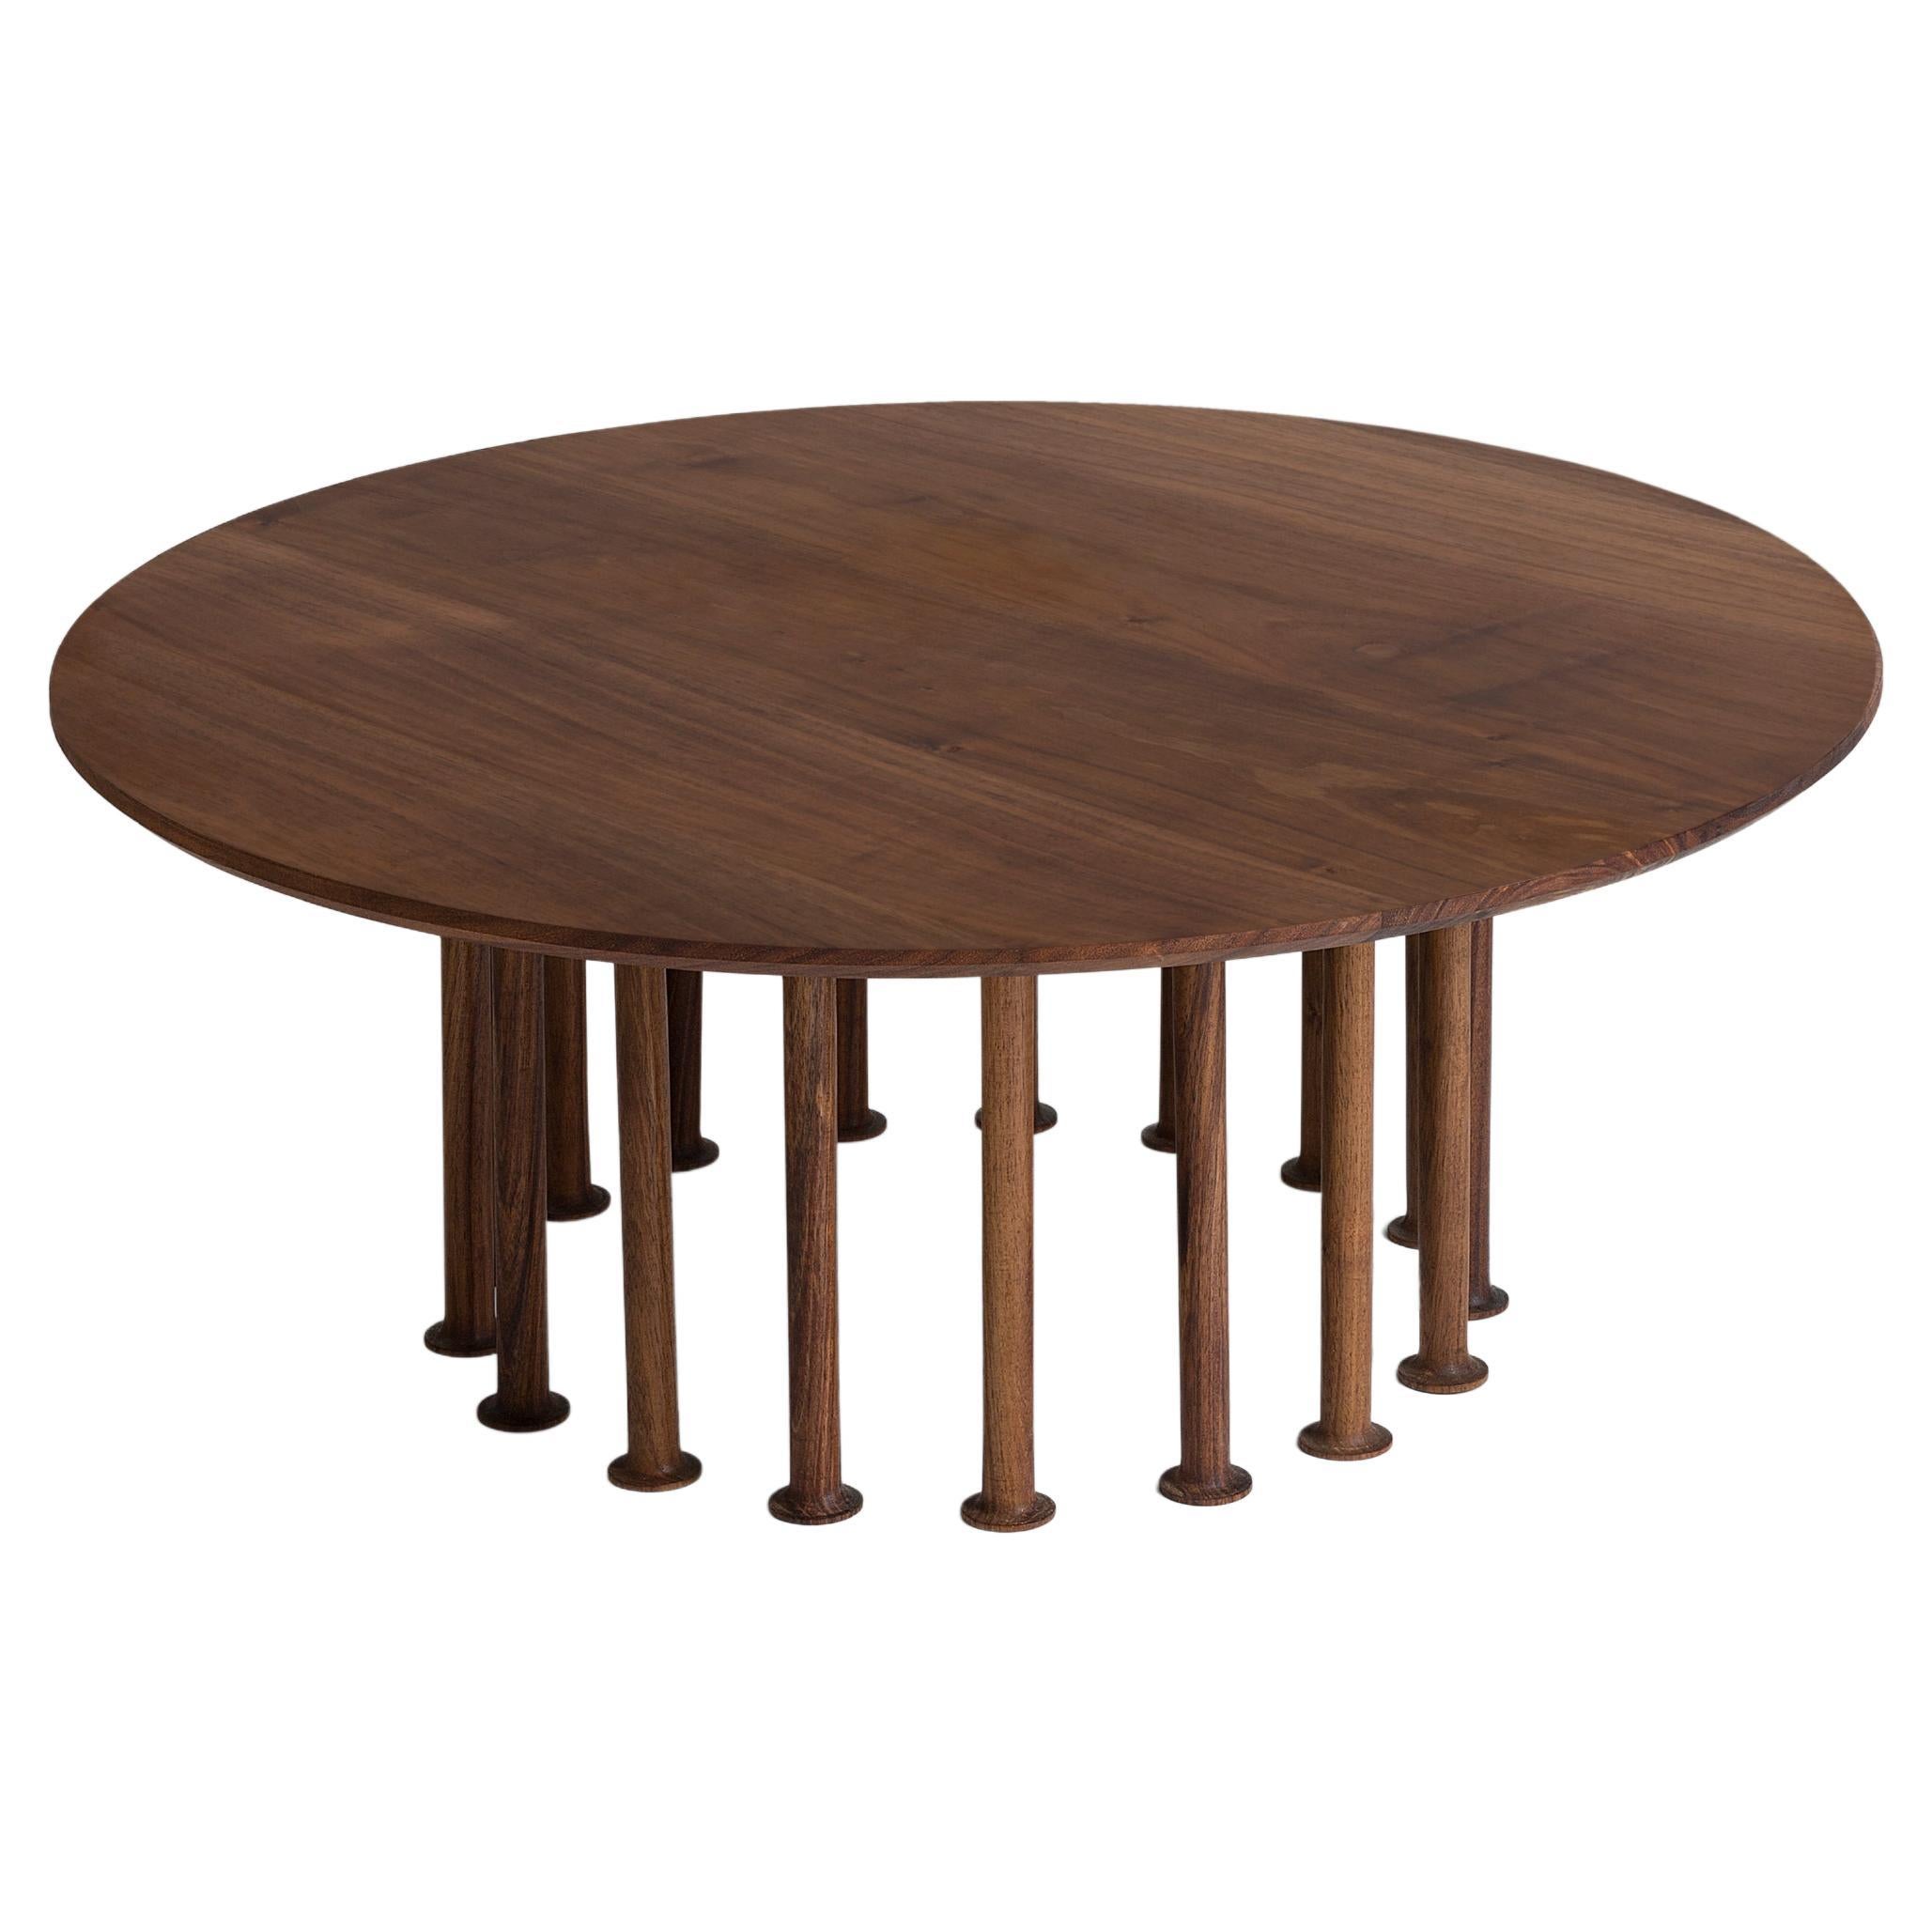 Contemporary Wood Side Table "Molinillo 217 Coffee Table" by Colección Estudio